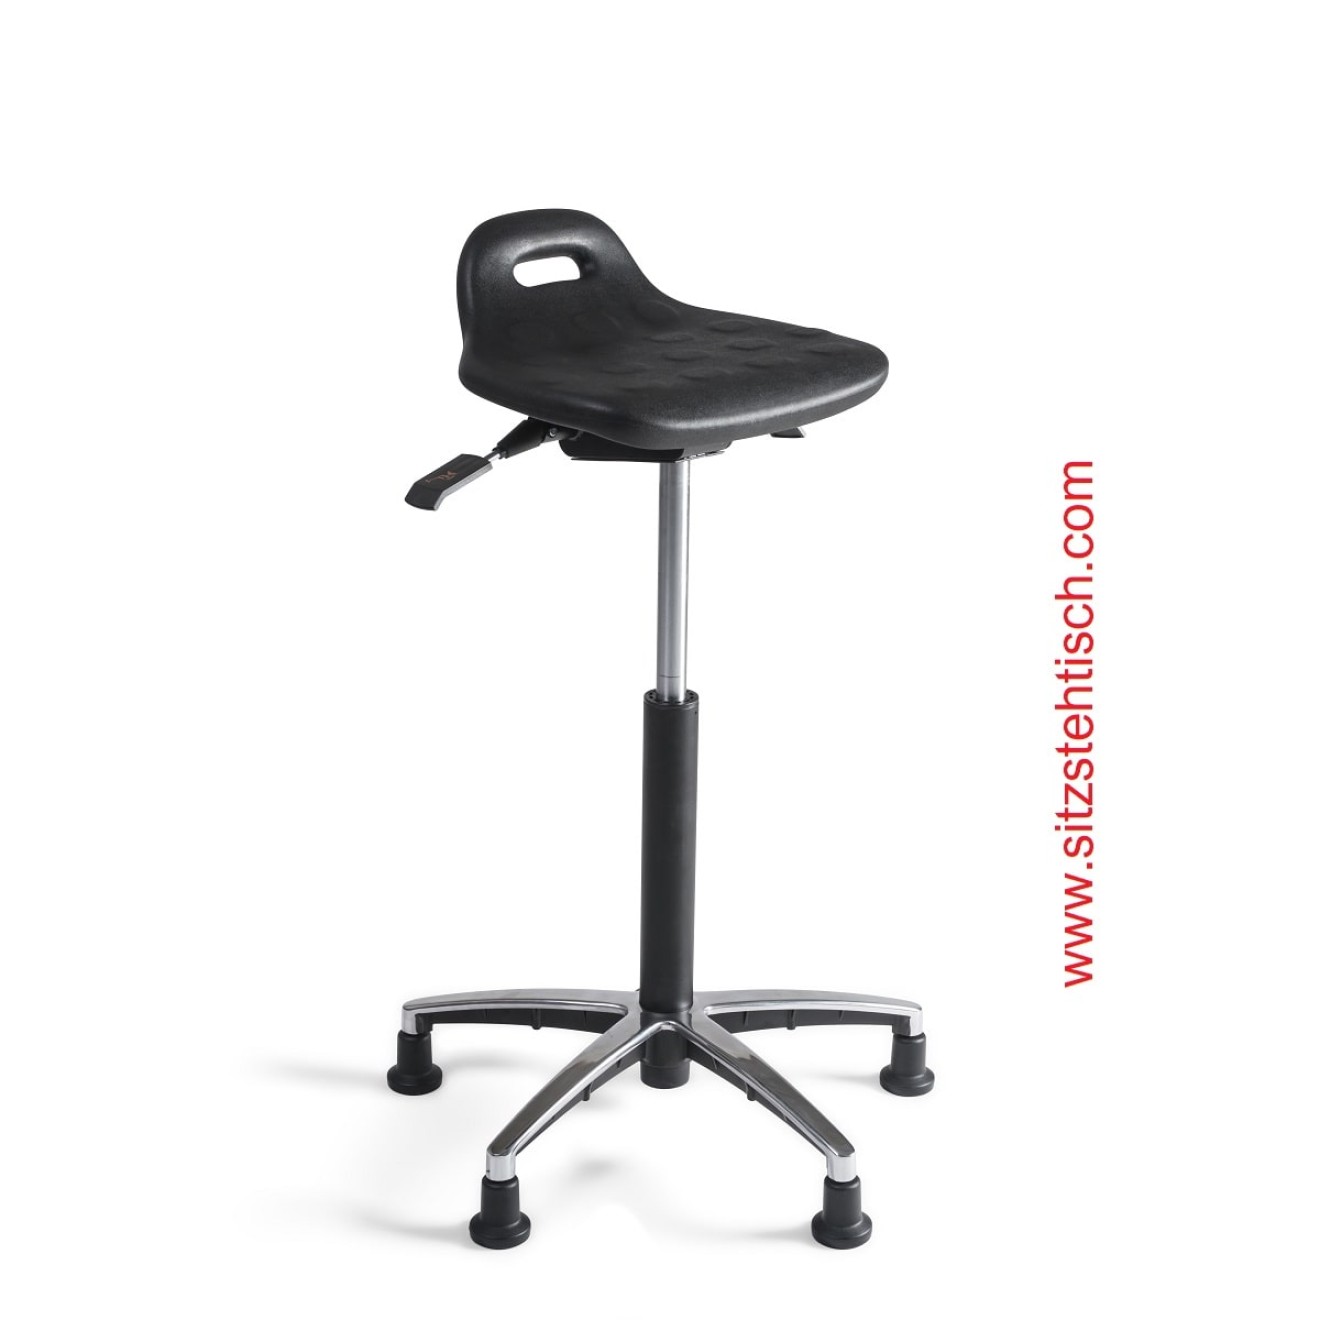 Stehhilfe Sitzhöhe- und Sitzwinkel verstellbar - Sitzfläche schwarzer PU Schaum - Fußkreuz Aluminium mit Gleiter - 5 Jahre Garantie -100340